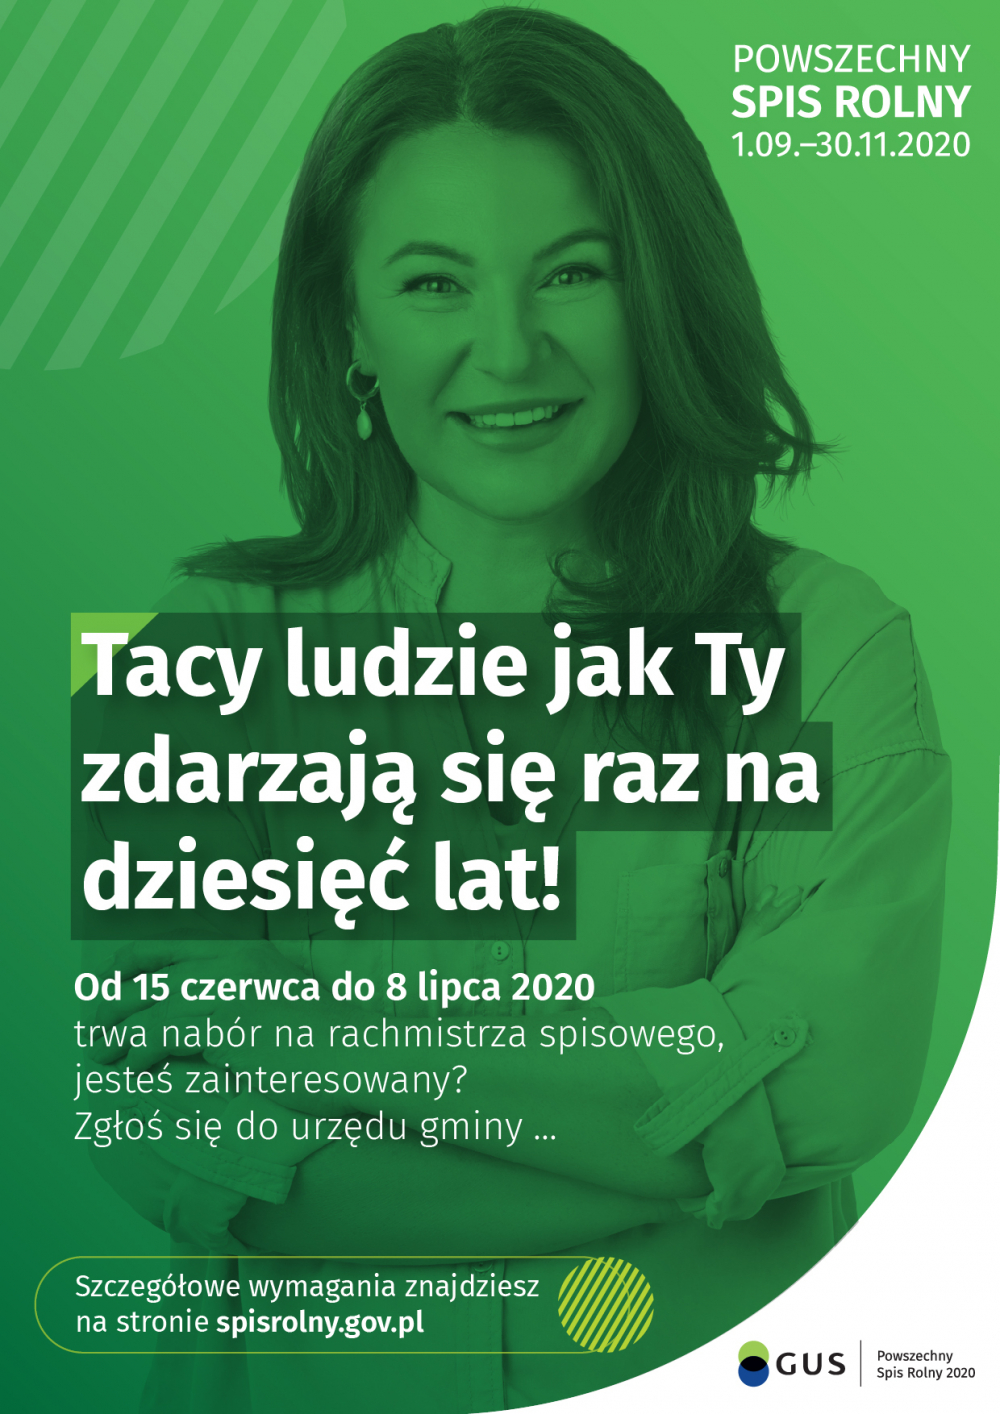 Powszechny Spis Rolny 2020 r.